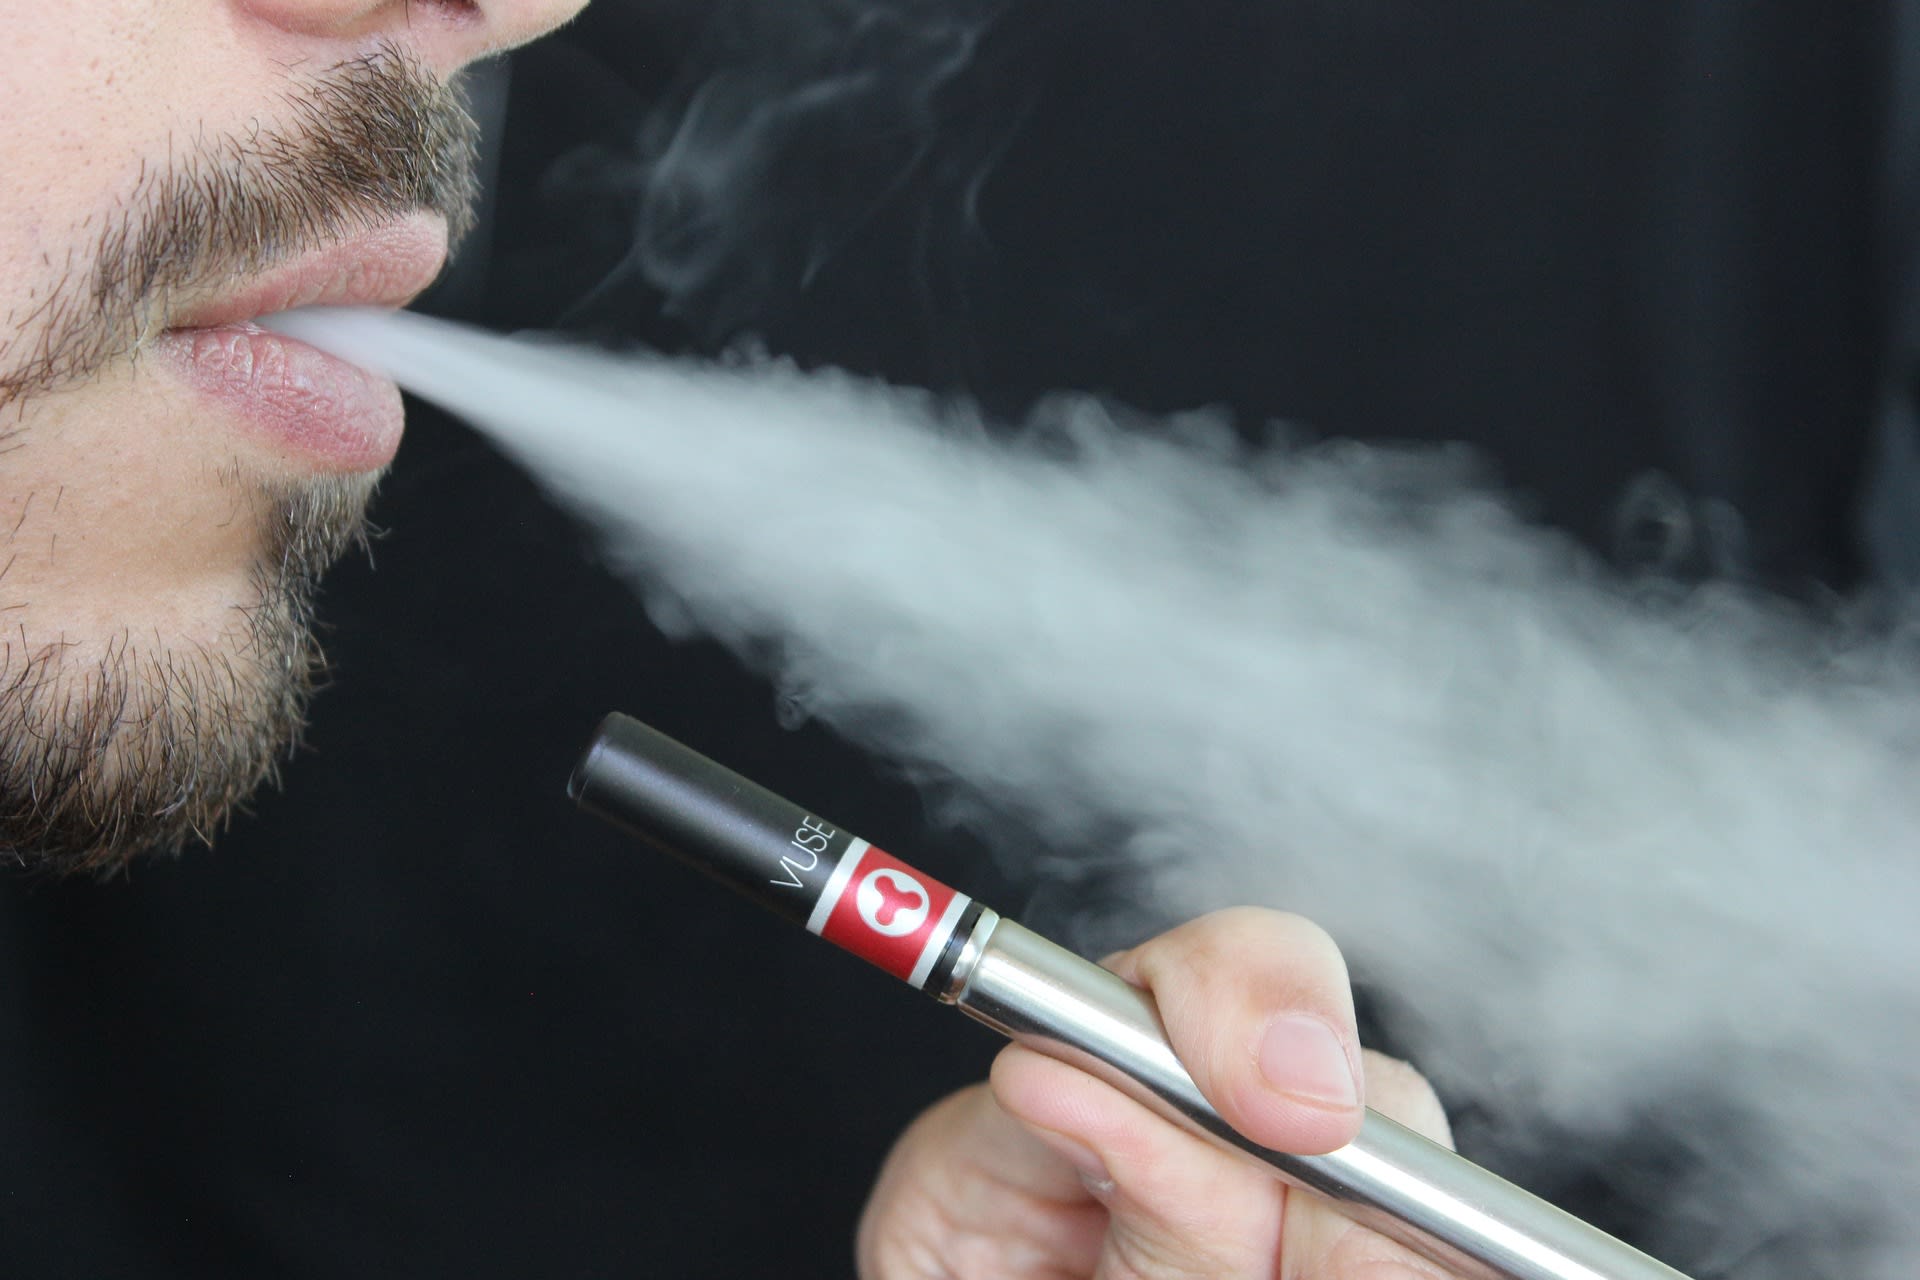 Počet případů poškození plic v souvislosti s užíváním e-cigaret v USA přibývá, zemřelo dalších 5 lidí